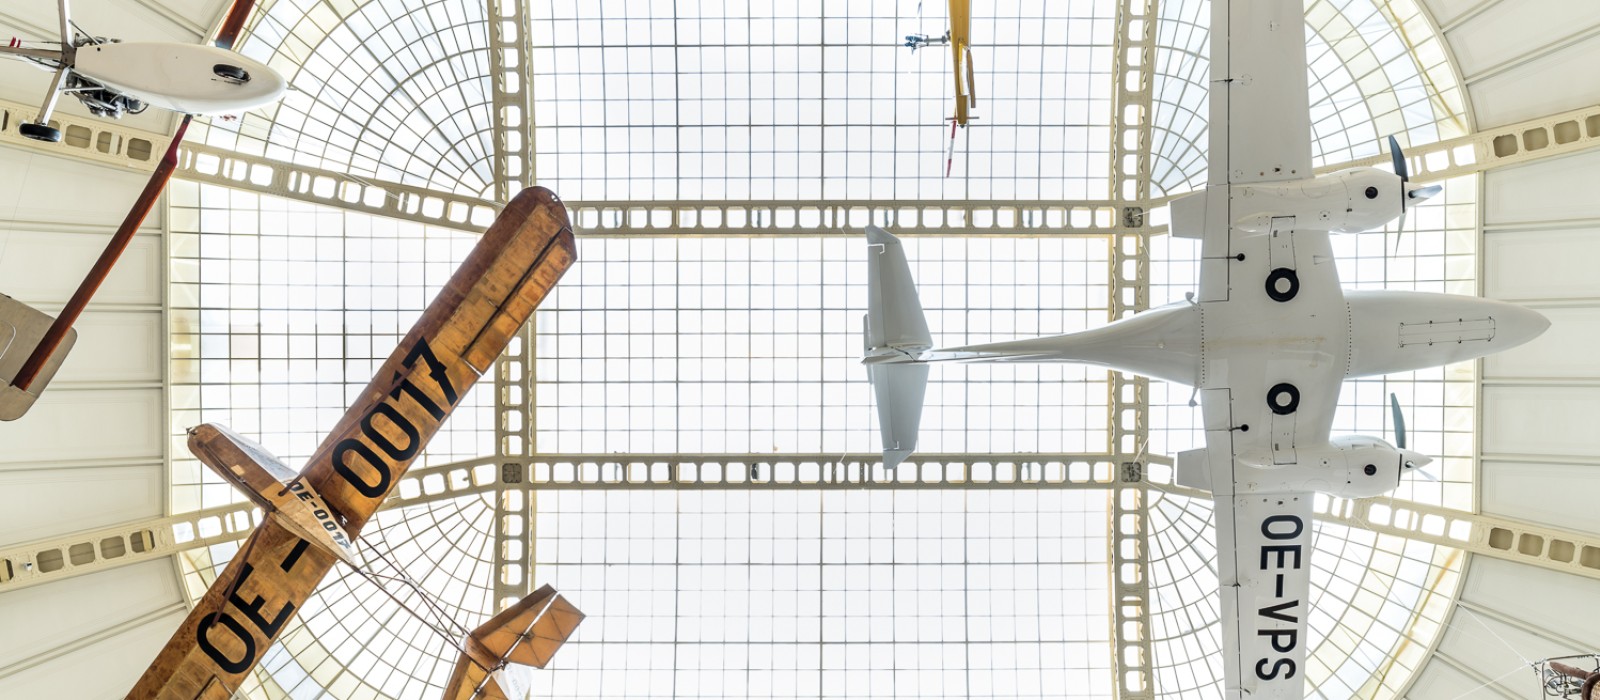 : Flugzeuge, die unter dem Dach des Museums hängen, Teil der Ausstellung "Mobilität"